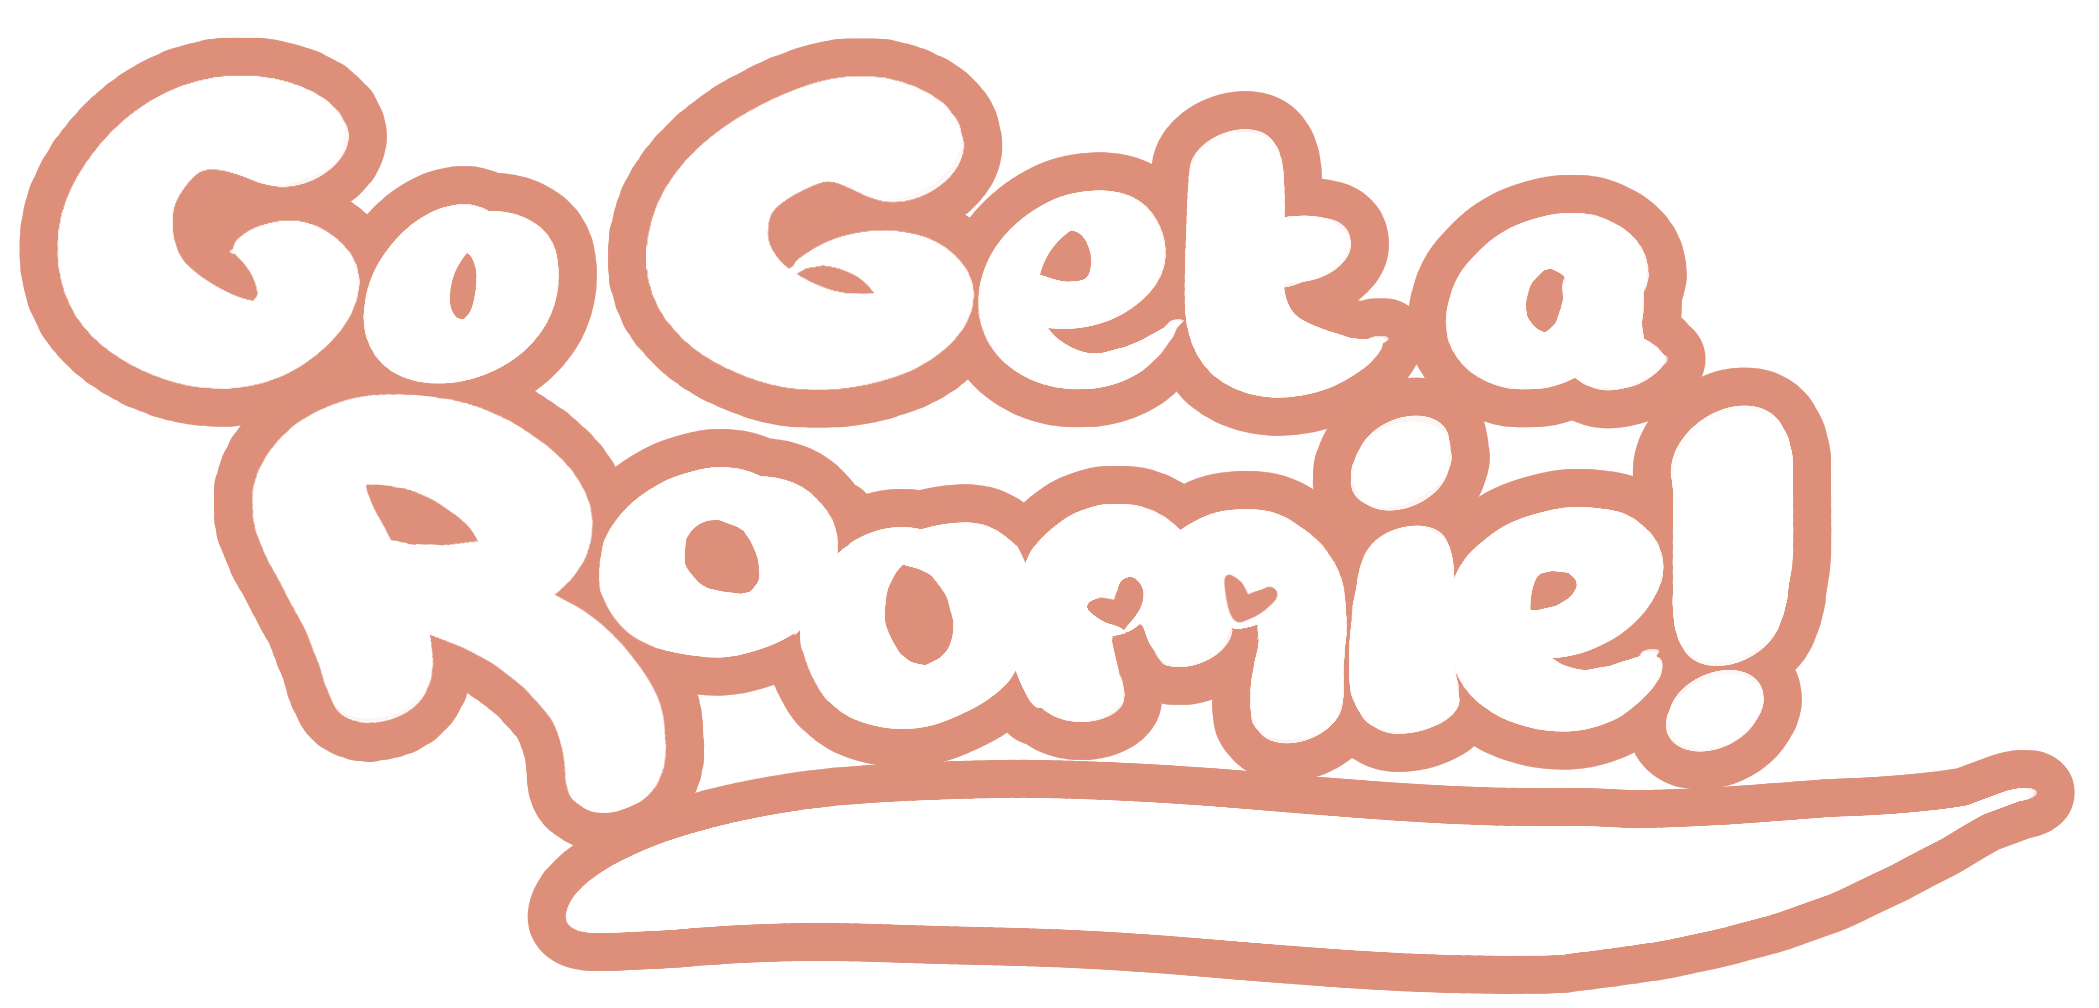 Go Get a Roomie!